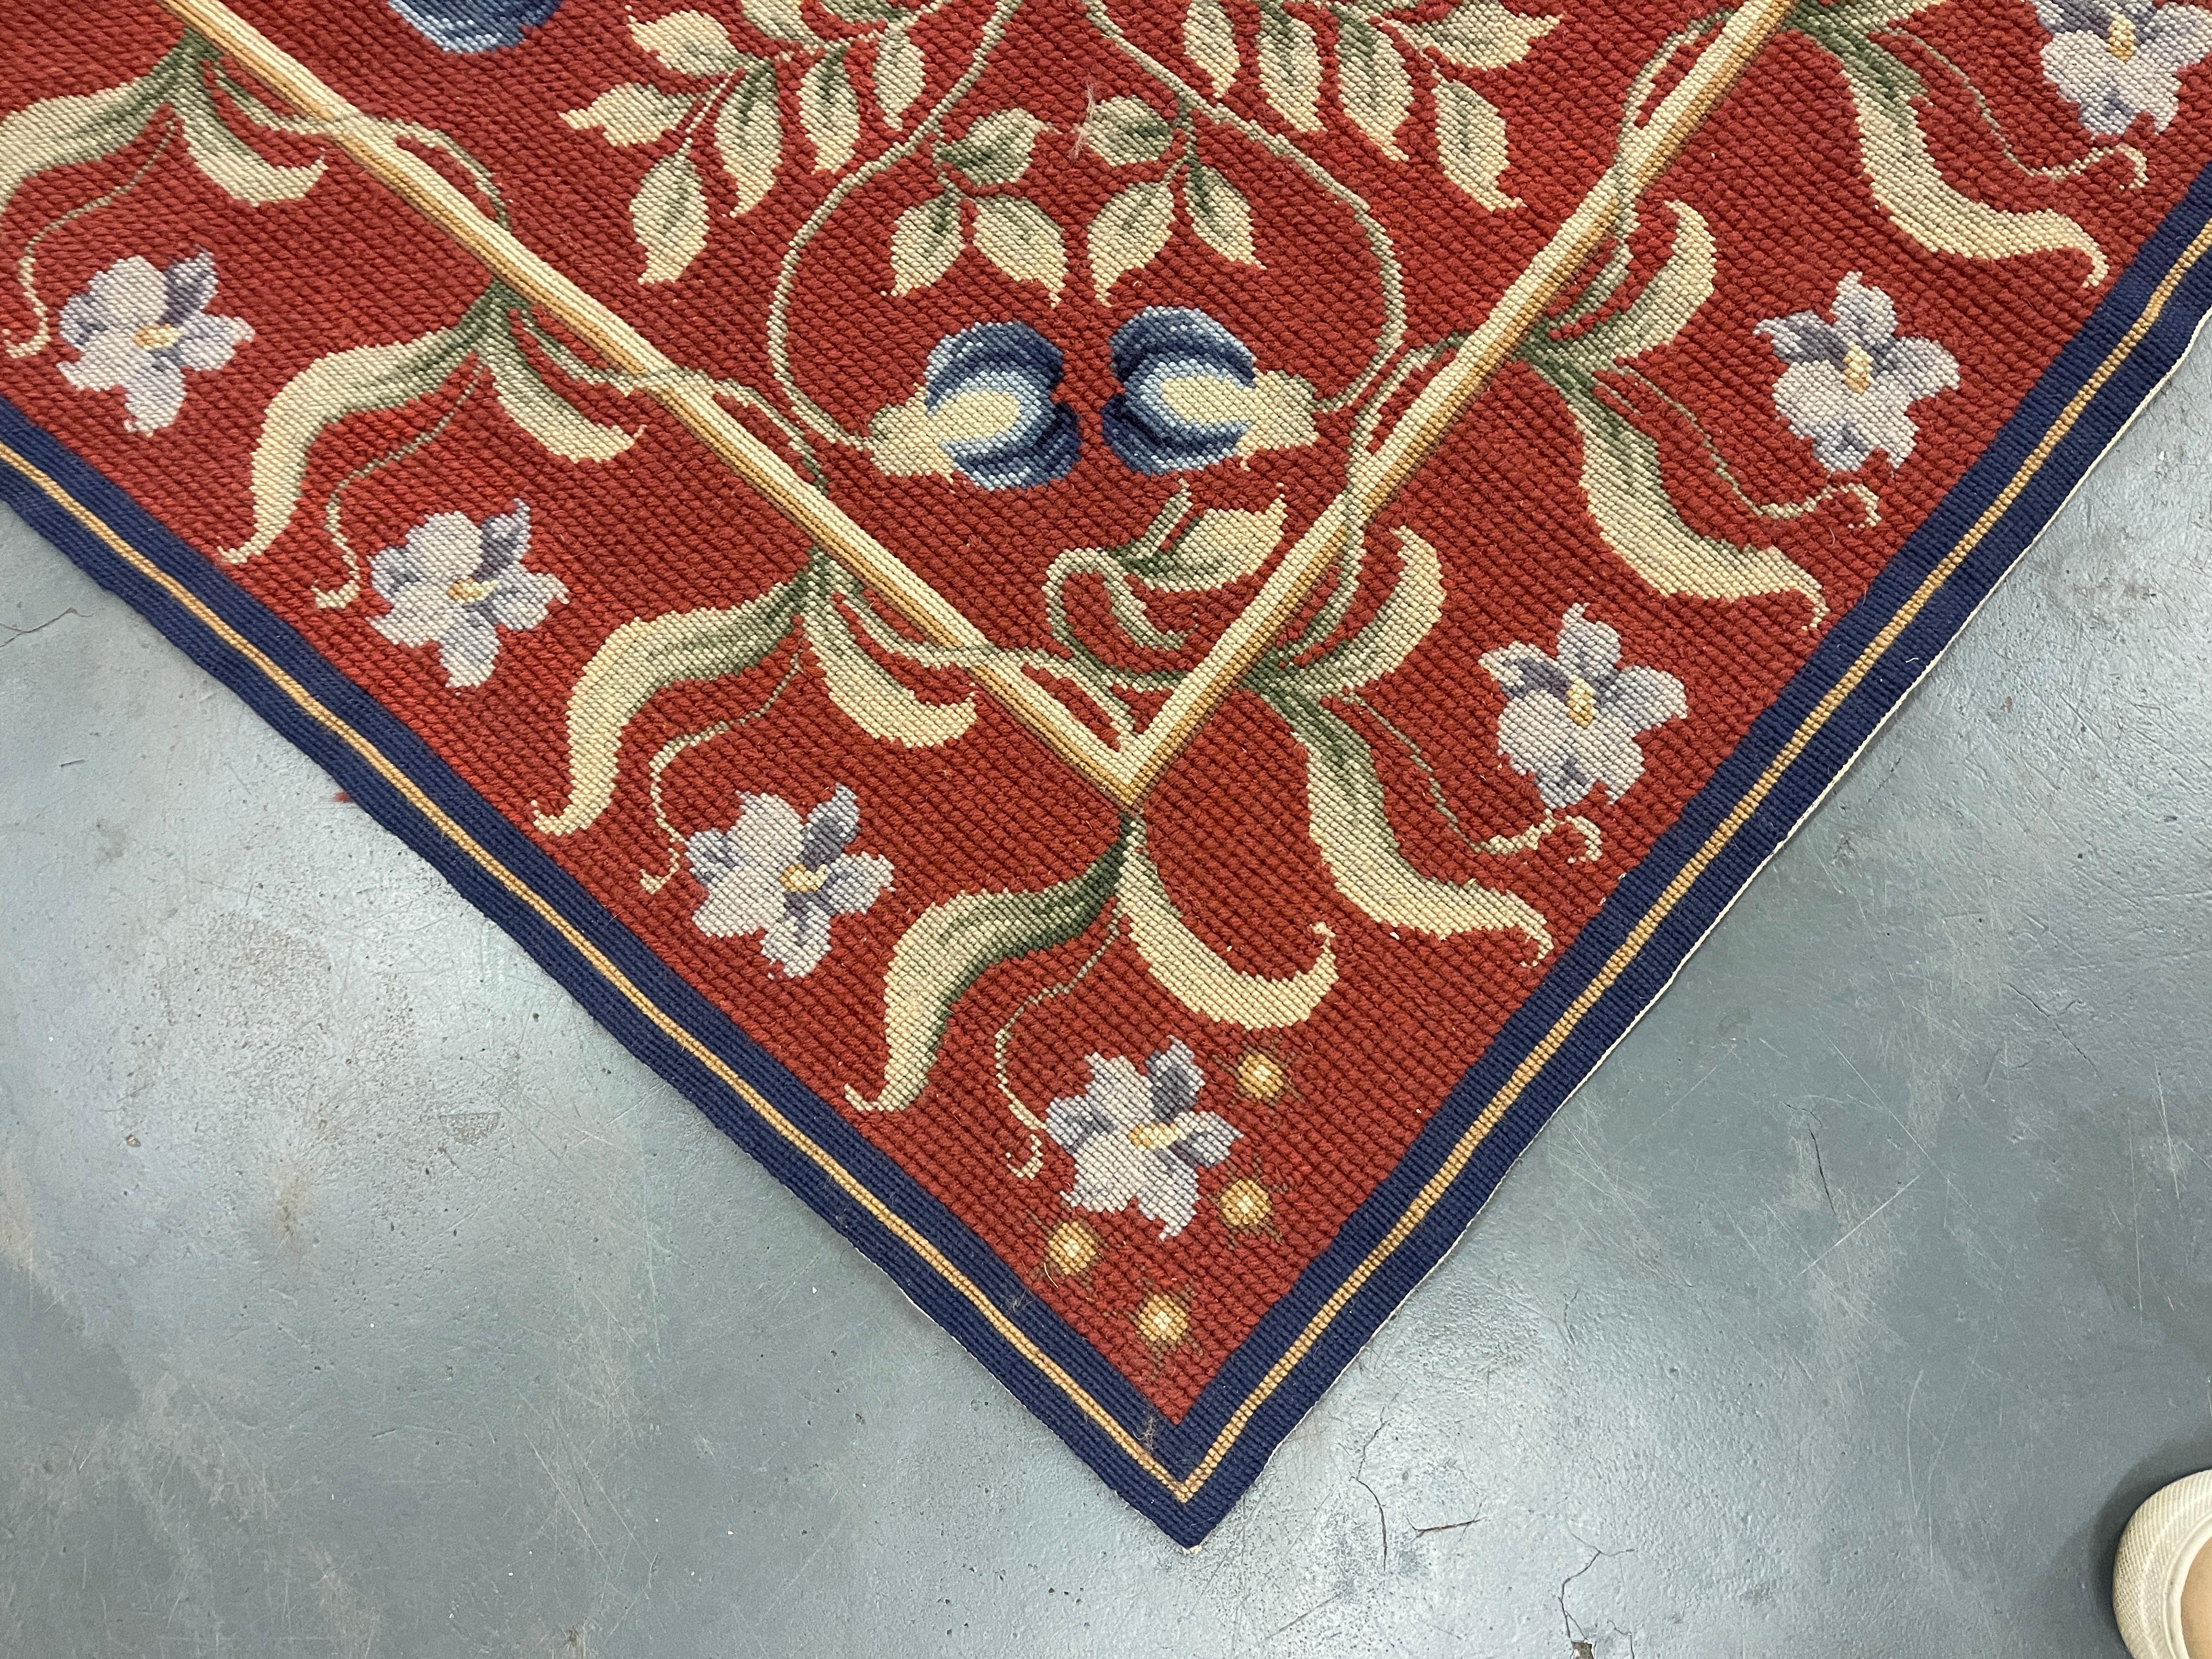 Dieser fantastische Teppich wurde von Hand gewebt und zeigt ein wunderschönes asymmetrisches Blumenmuster auf einem roten Hintergrund mit creme-grünen und elfenbeinfarbenen Akzenten. Die Farbe und das Design dieses eleganten Stücks machen ihn zu